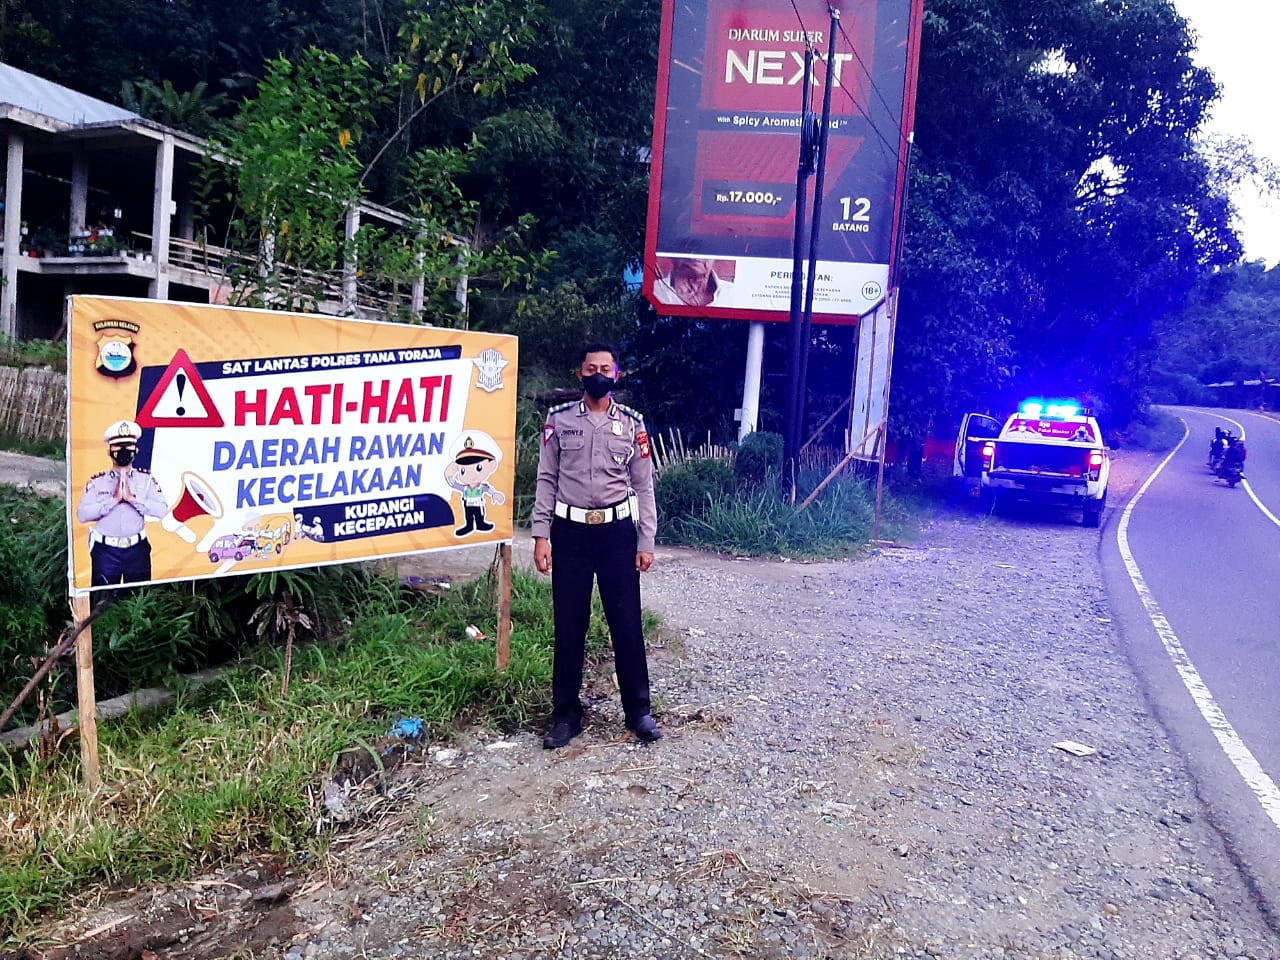 Sat Lantas Res Tana Toraja Pemasangan Rambu Hati Hati Pada Daerah Rawan